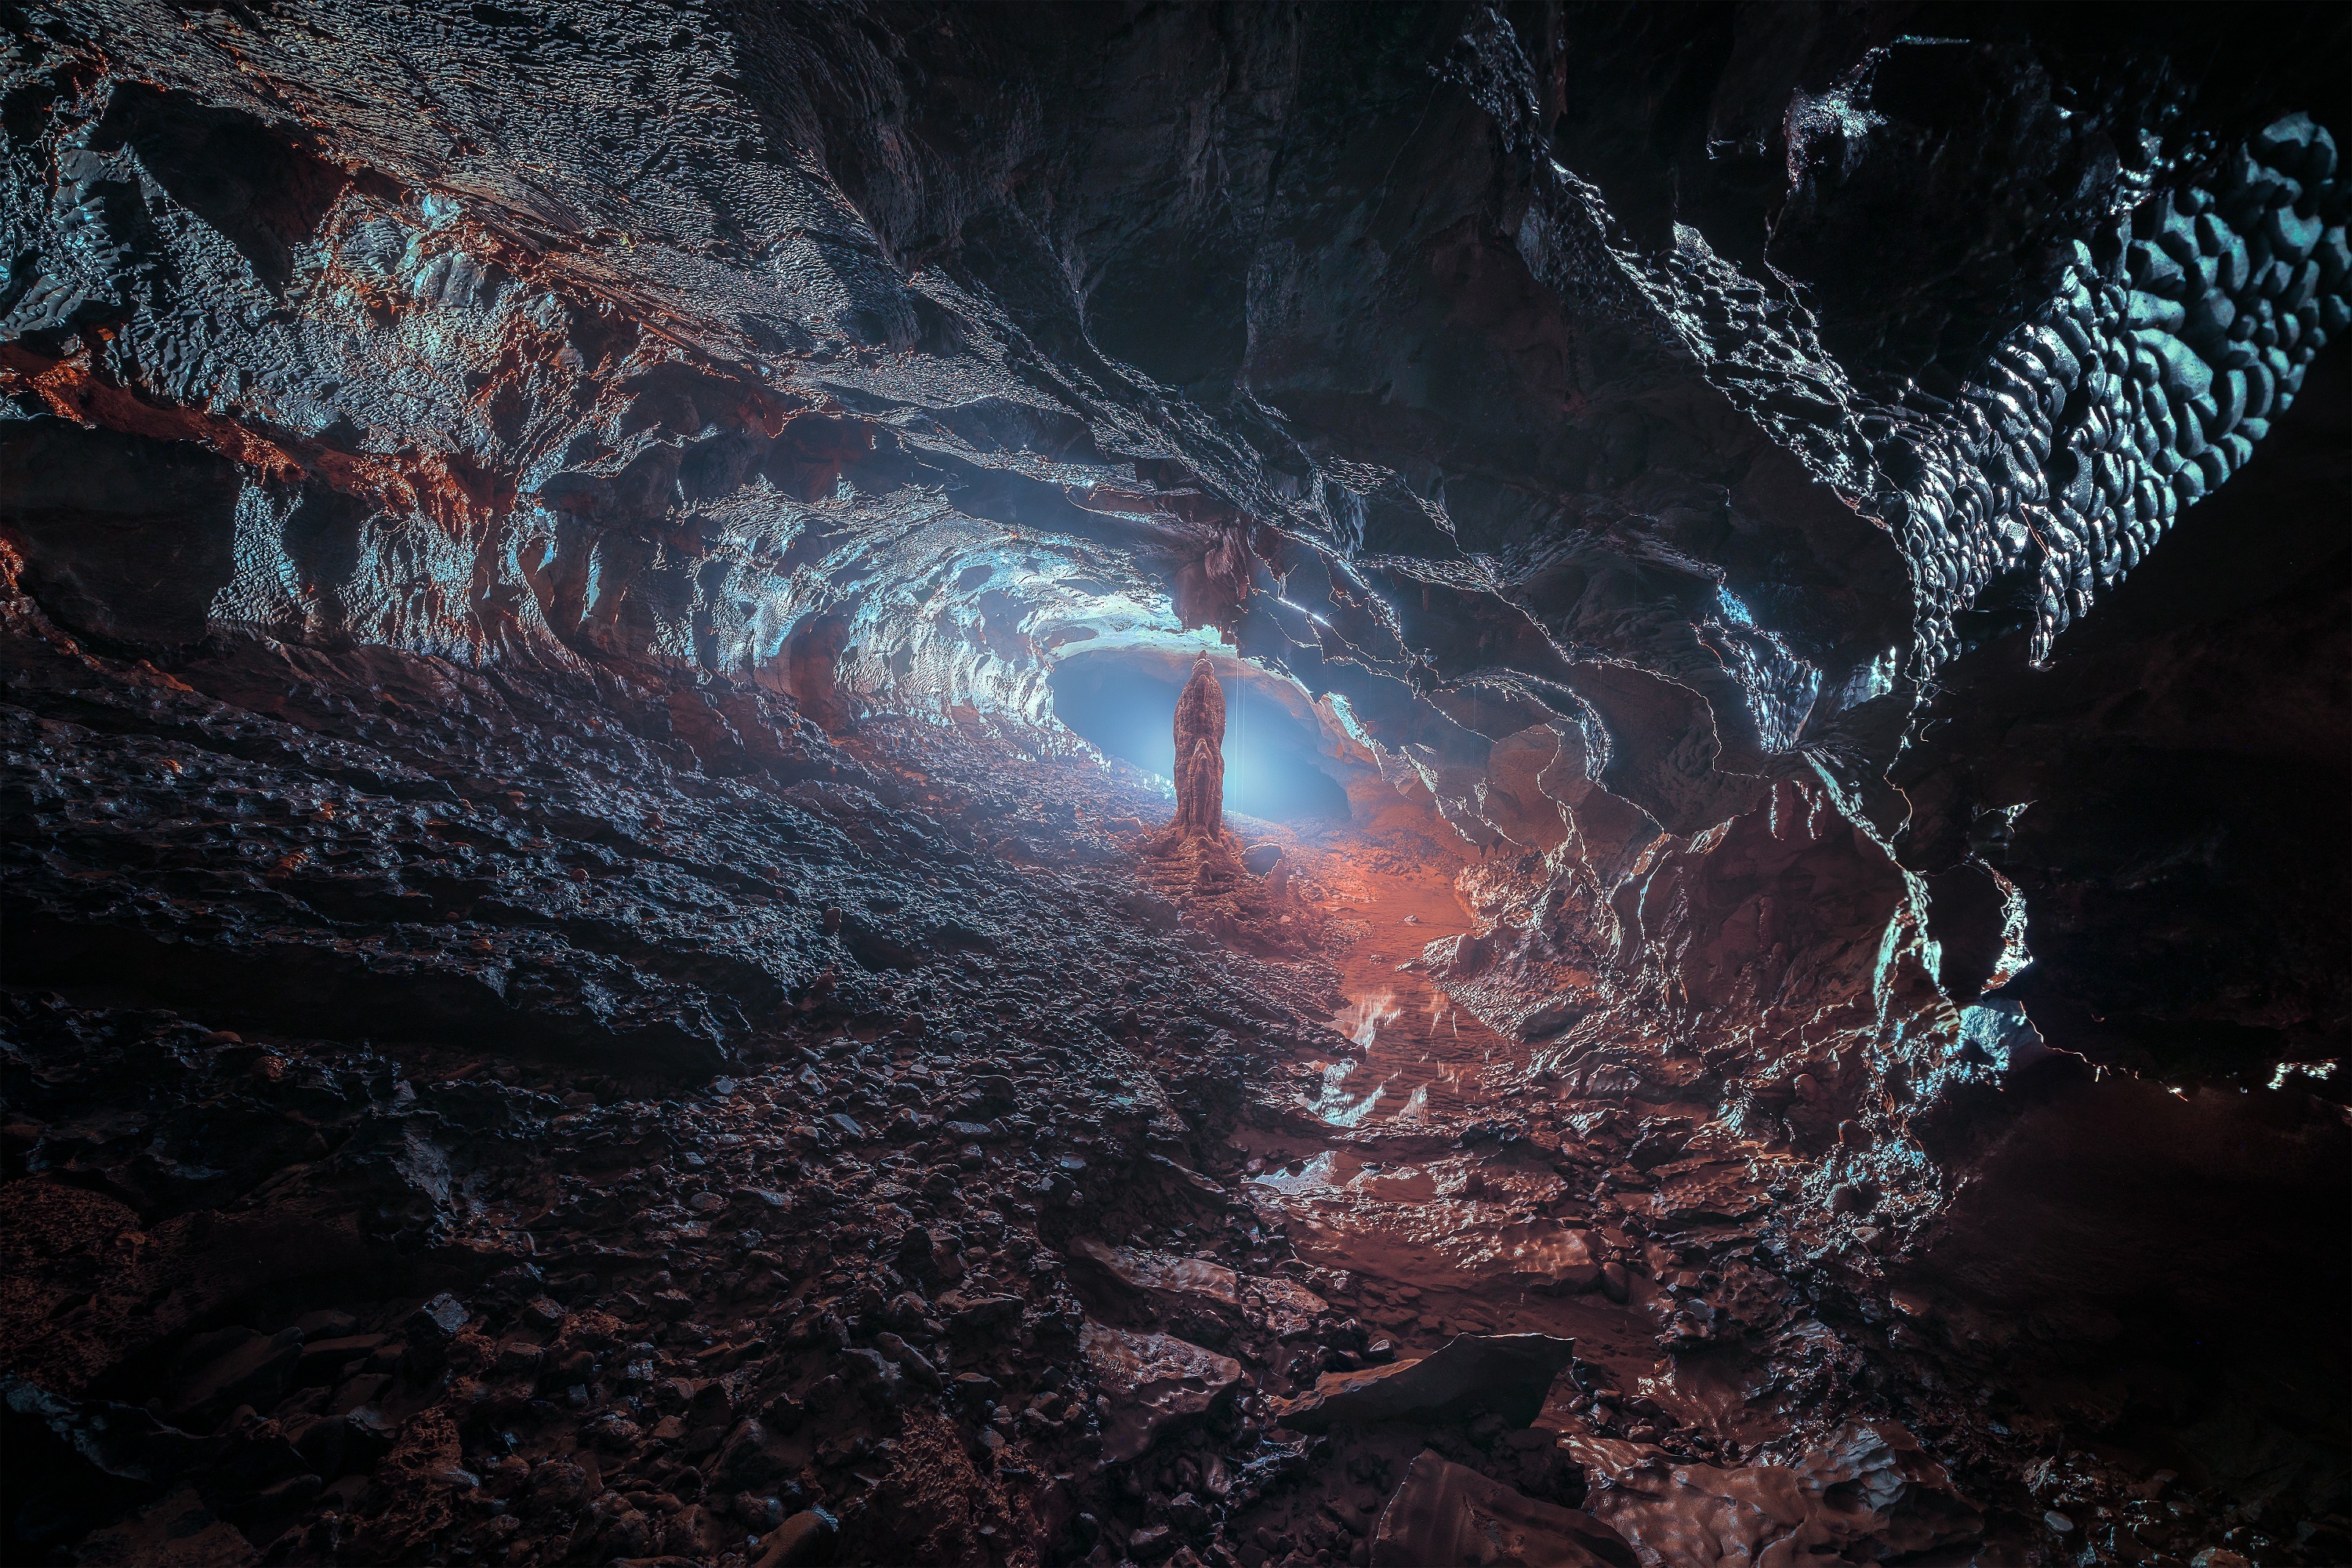 Vẻ đẹp siêu thực trong hang động có hồ nước bí ẩn treo lơ lửng - 9